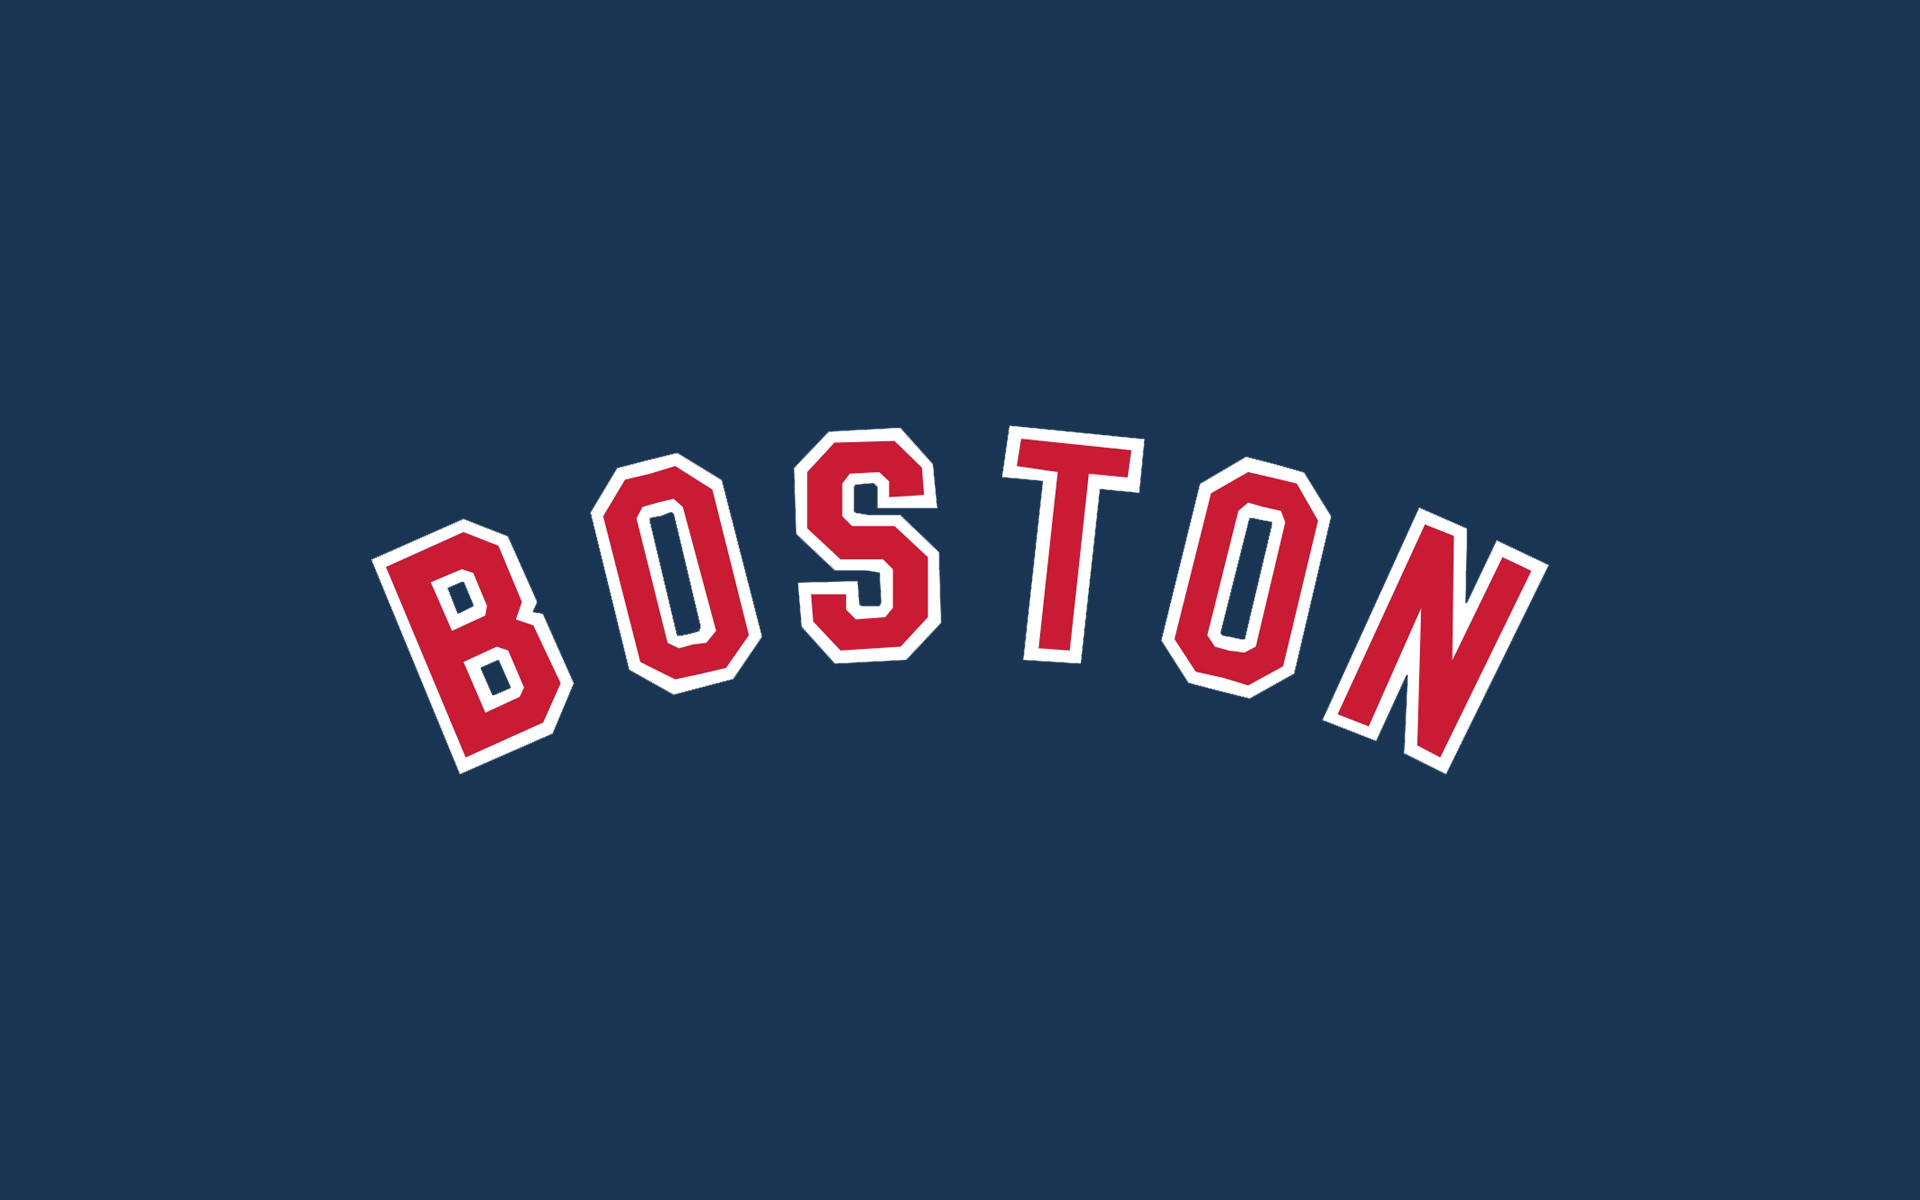 Boston text wallpaper